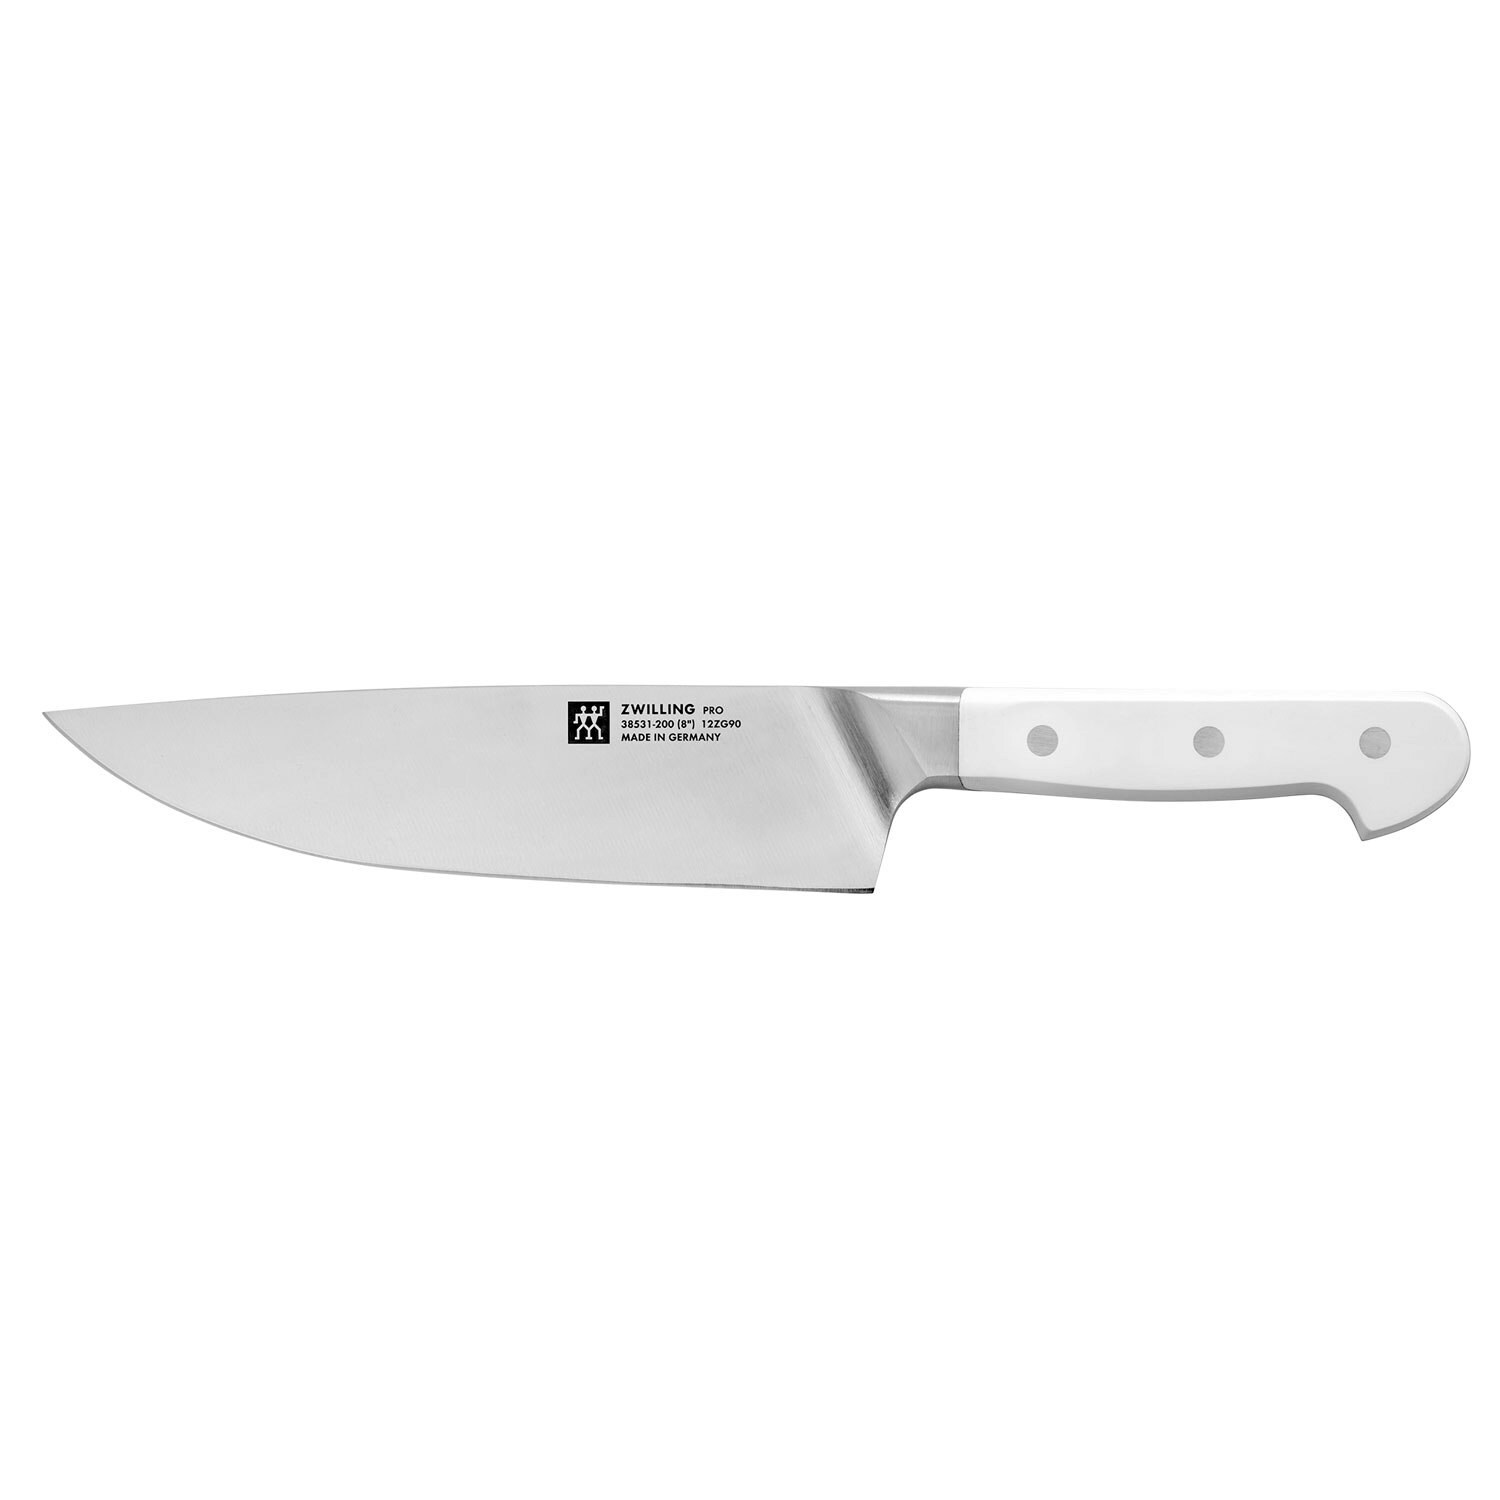 https://royaldesign.com/image/2/zwilling-pro-le-blanc-chef-knife-20-cm-0